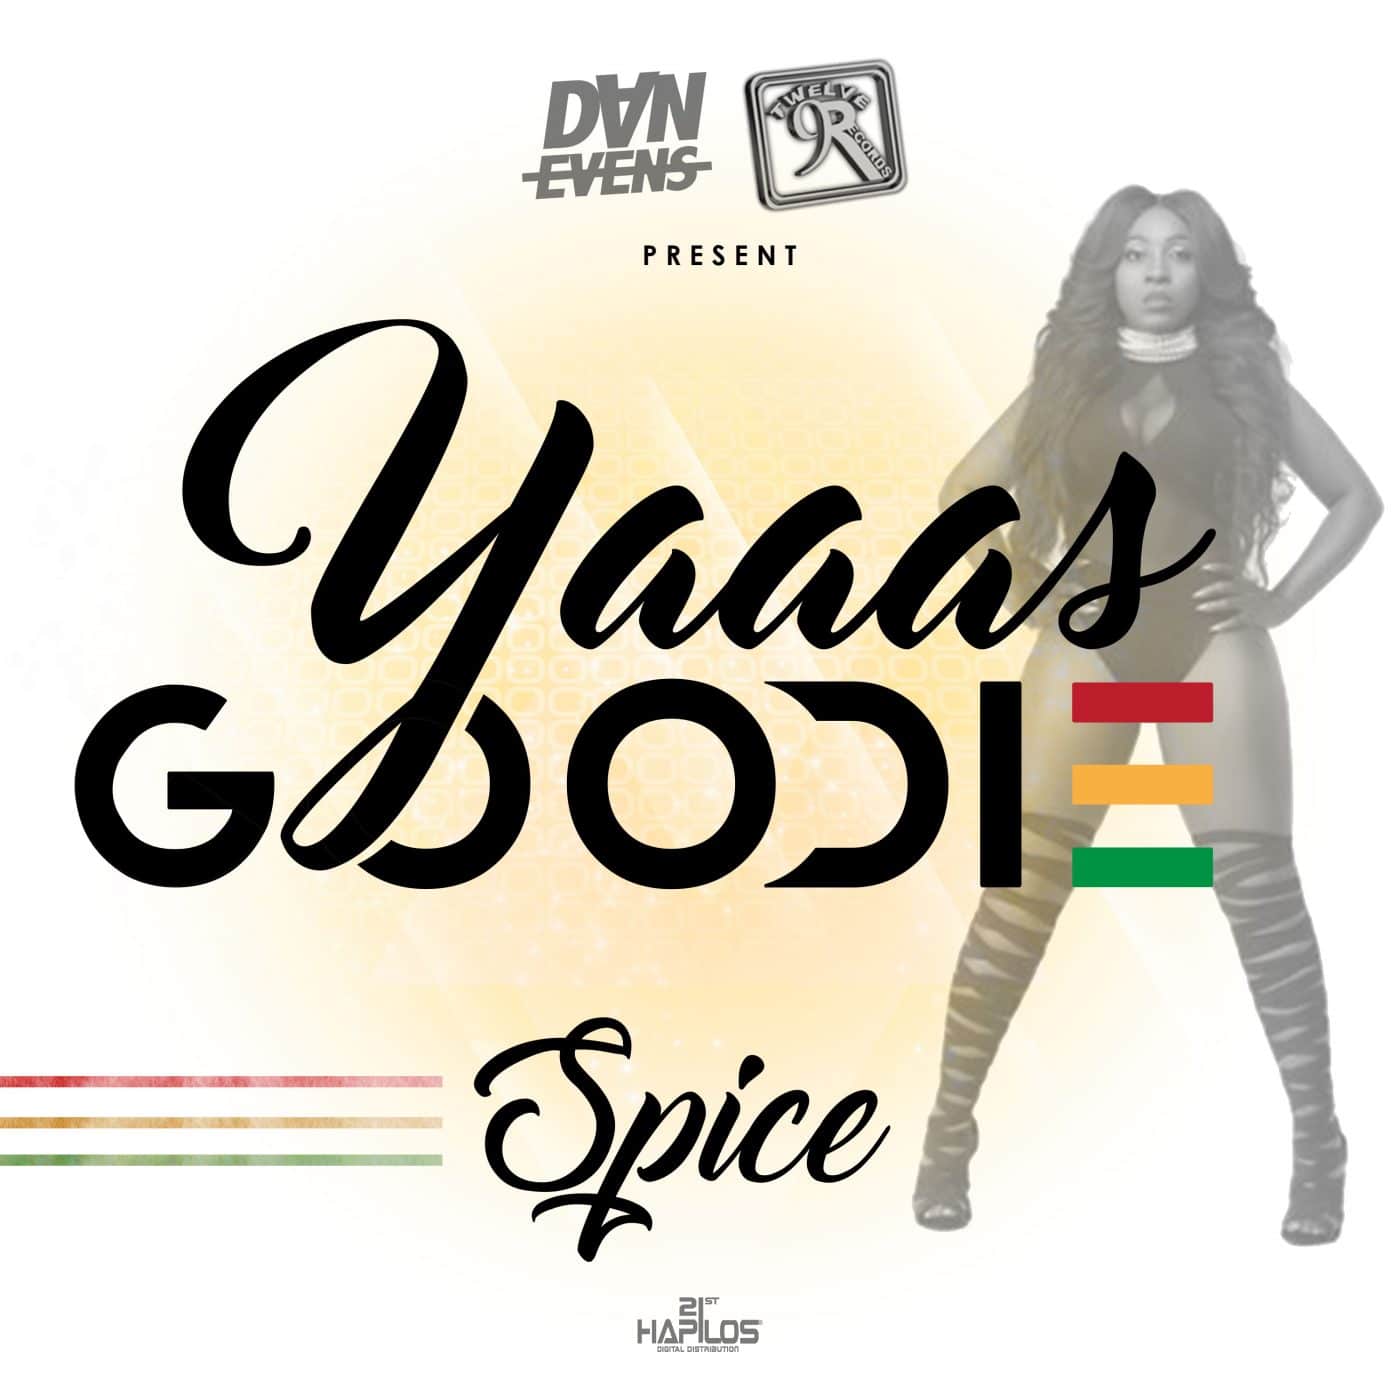 Spice - Yaaas Goodie - Twelve 9 Records / Dan Evens Music